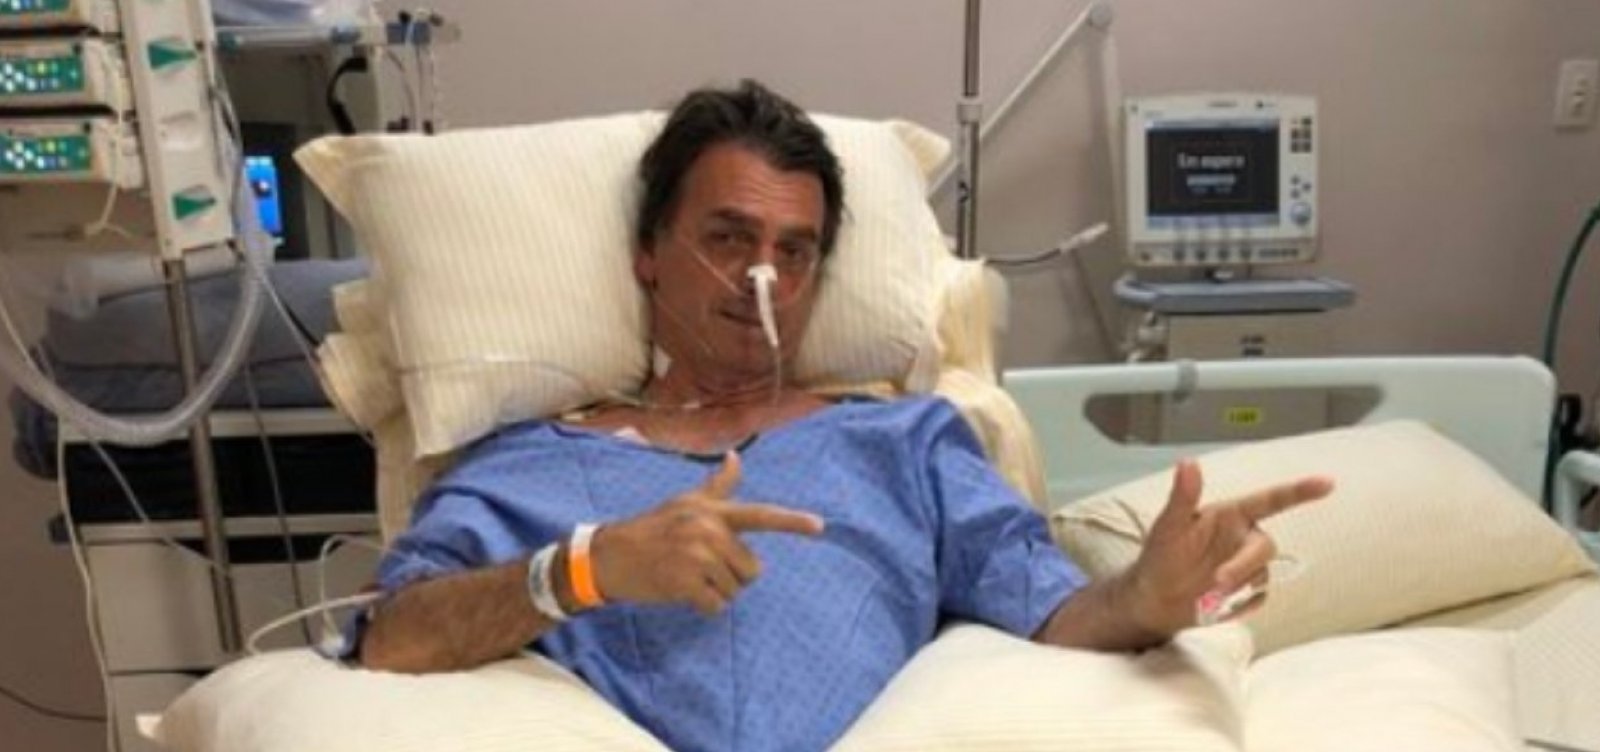 Estado de saúde é grave e Bolsonaro passará por nova cirurgia, diz boletim médico